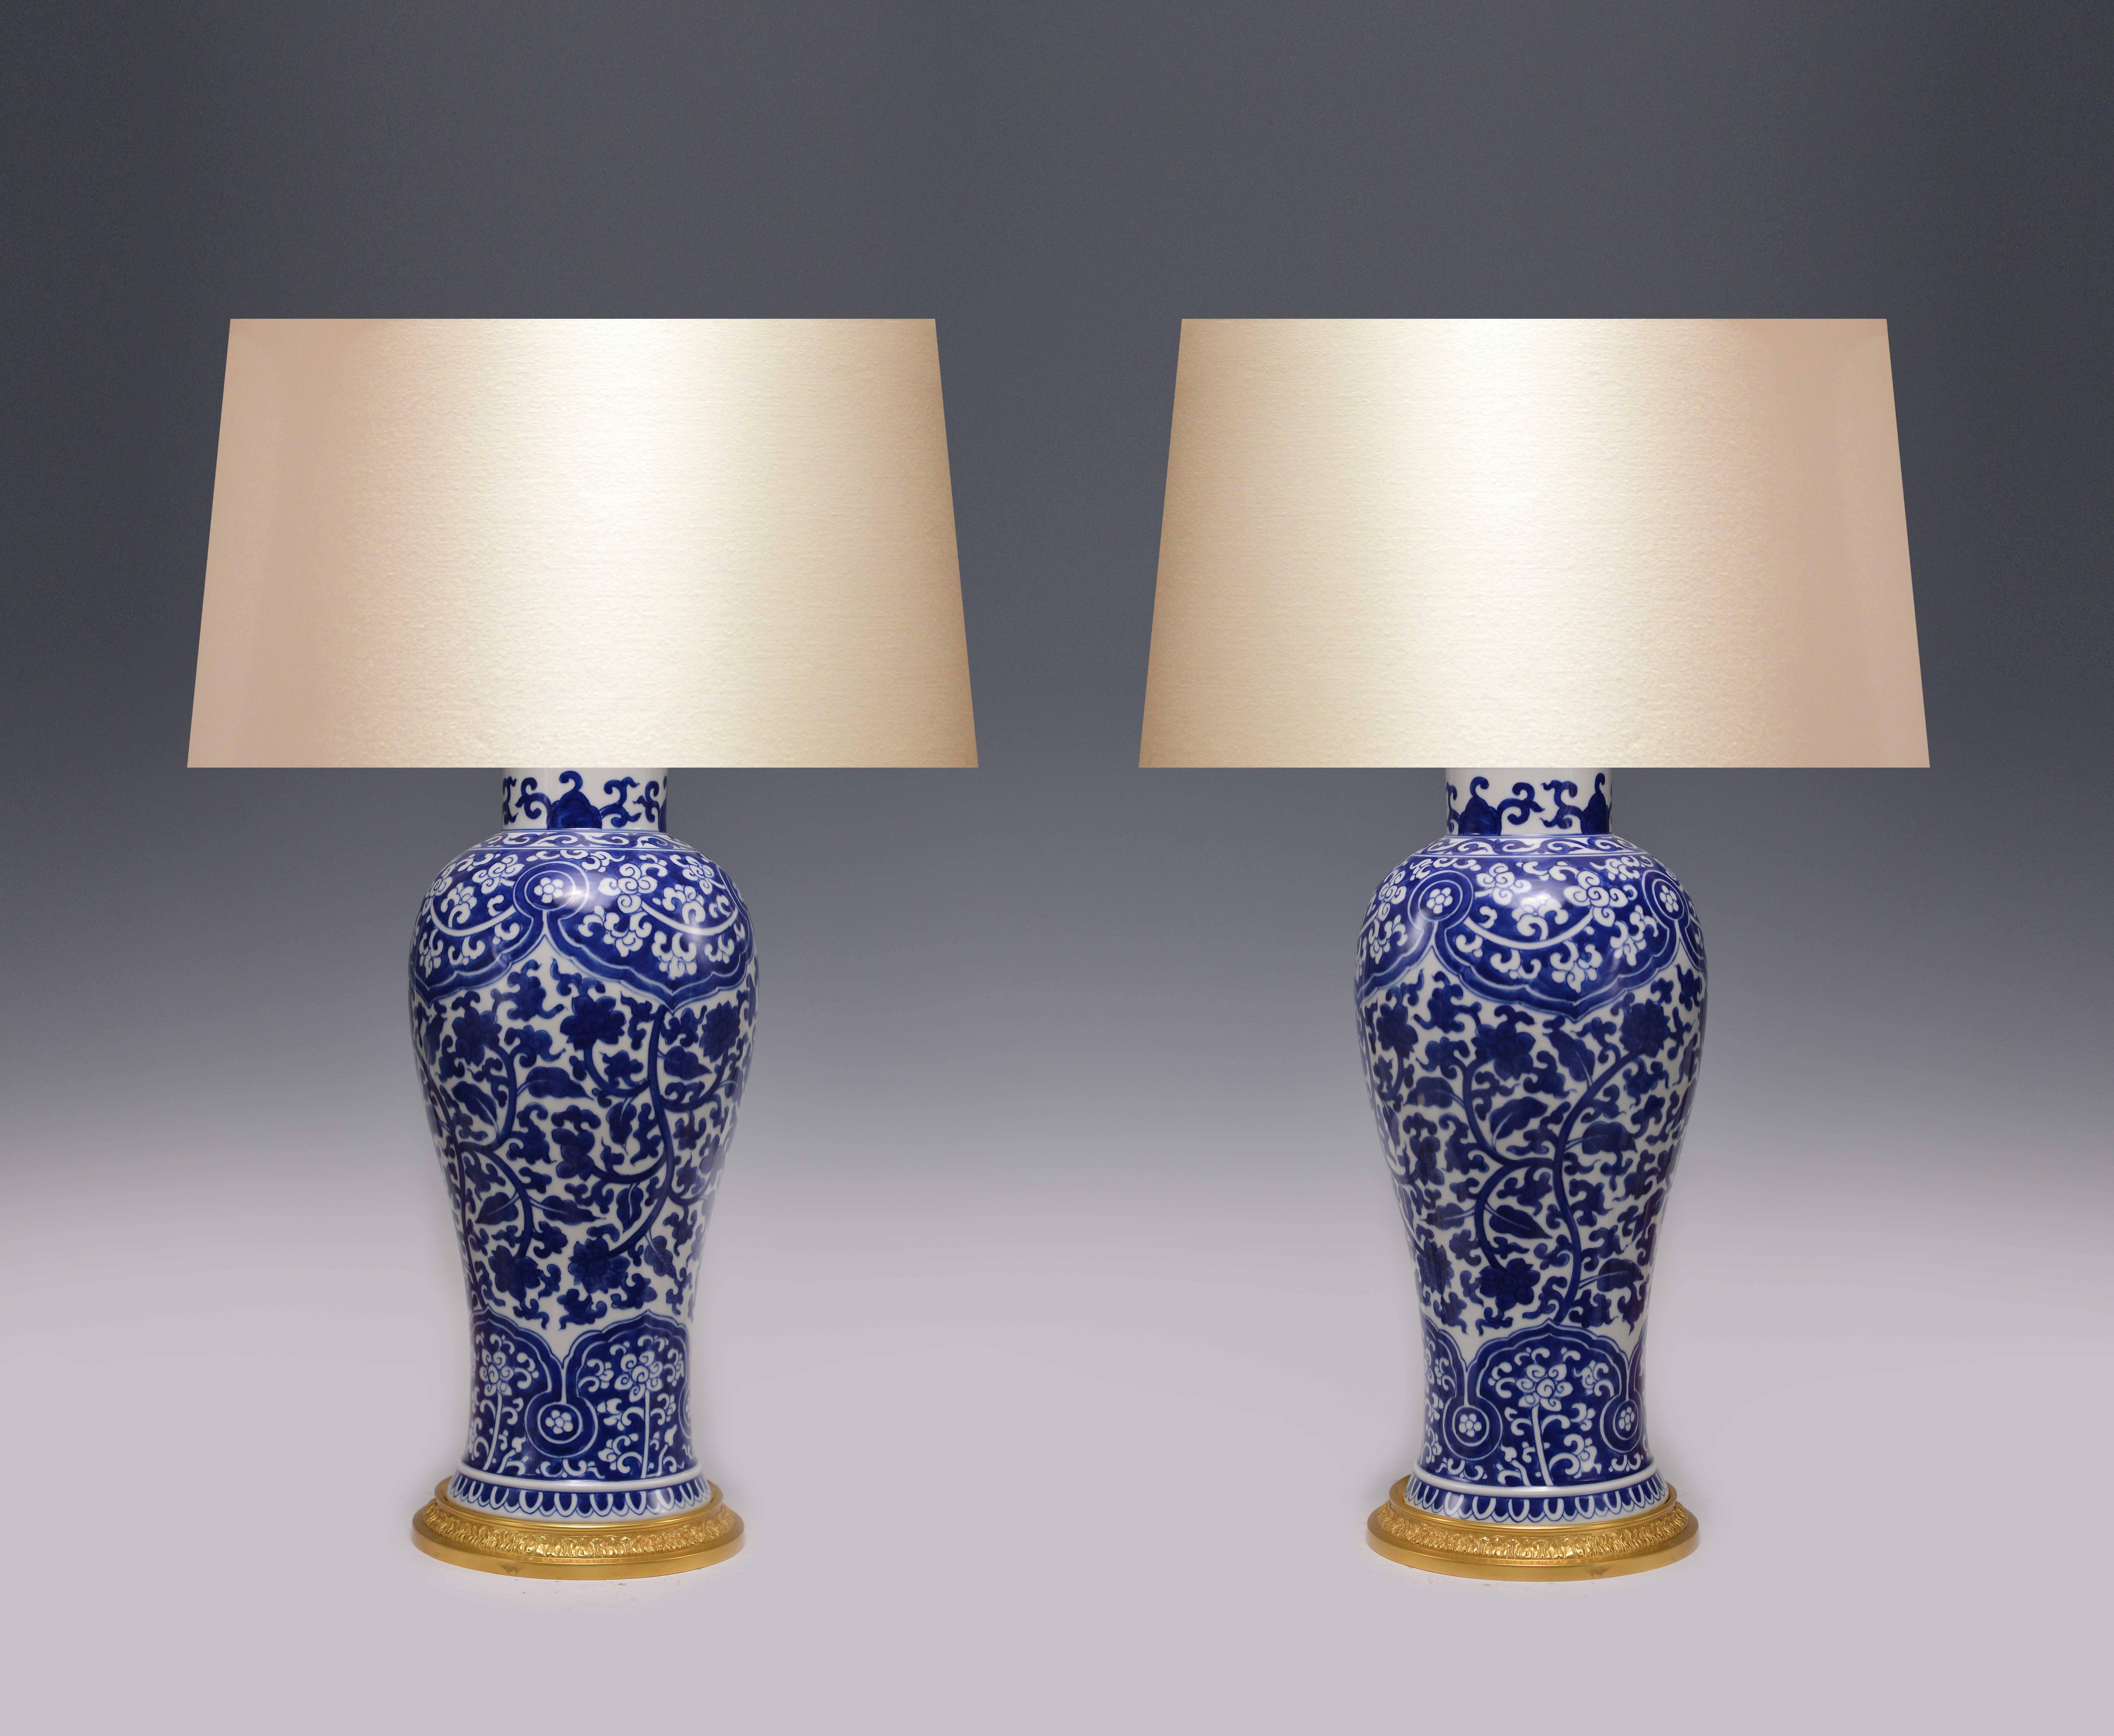 Fein bemalte blau-weiße Porzellanvasen mit Messingsockel, als Lampen montiert.
(Lampenschirm nicht enthalten)